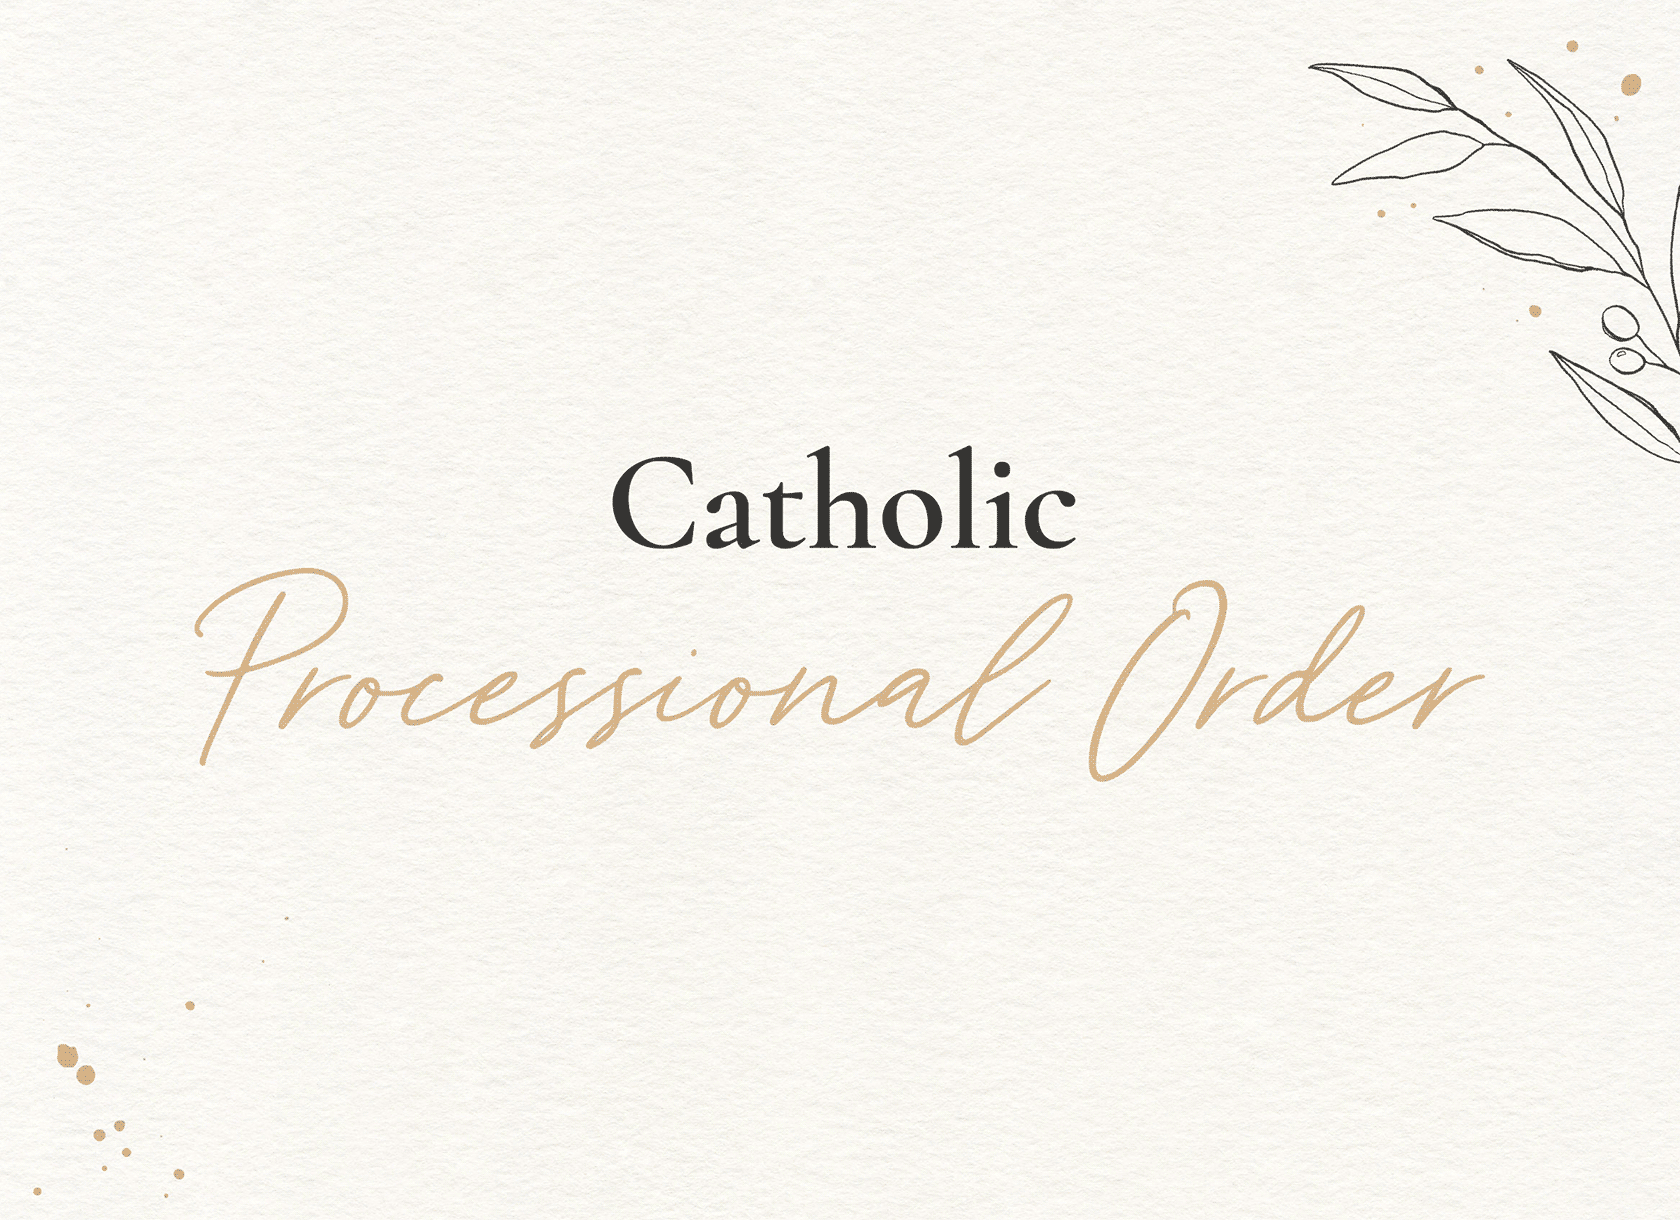 Catholic Processional Order